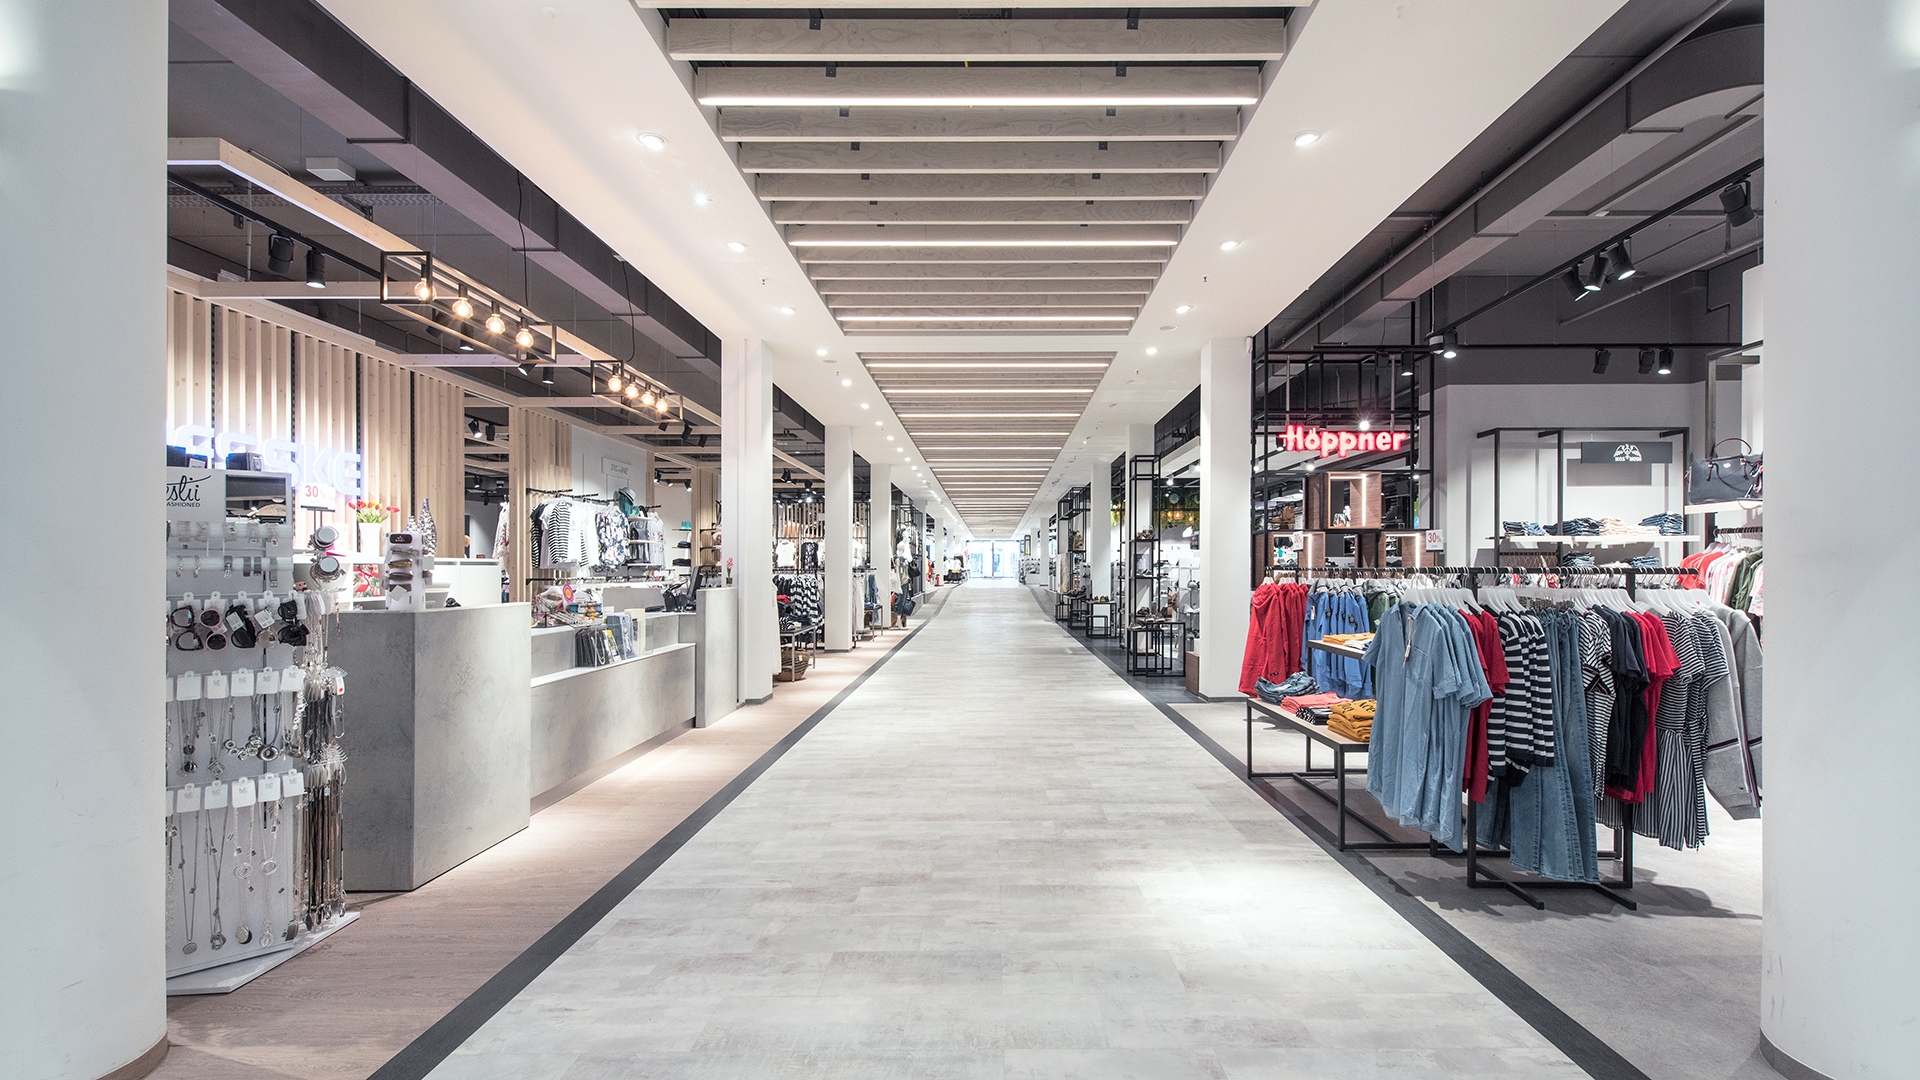 Domcenter Greifswald Revitalisierung Nette+Hartmann Hamburg Gestaltung New Look Shopdesign Innenarchitektur